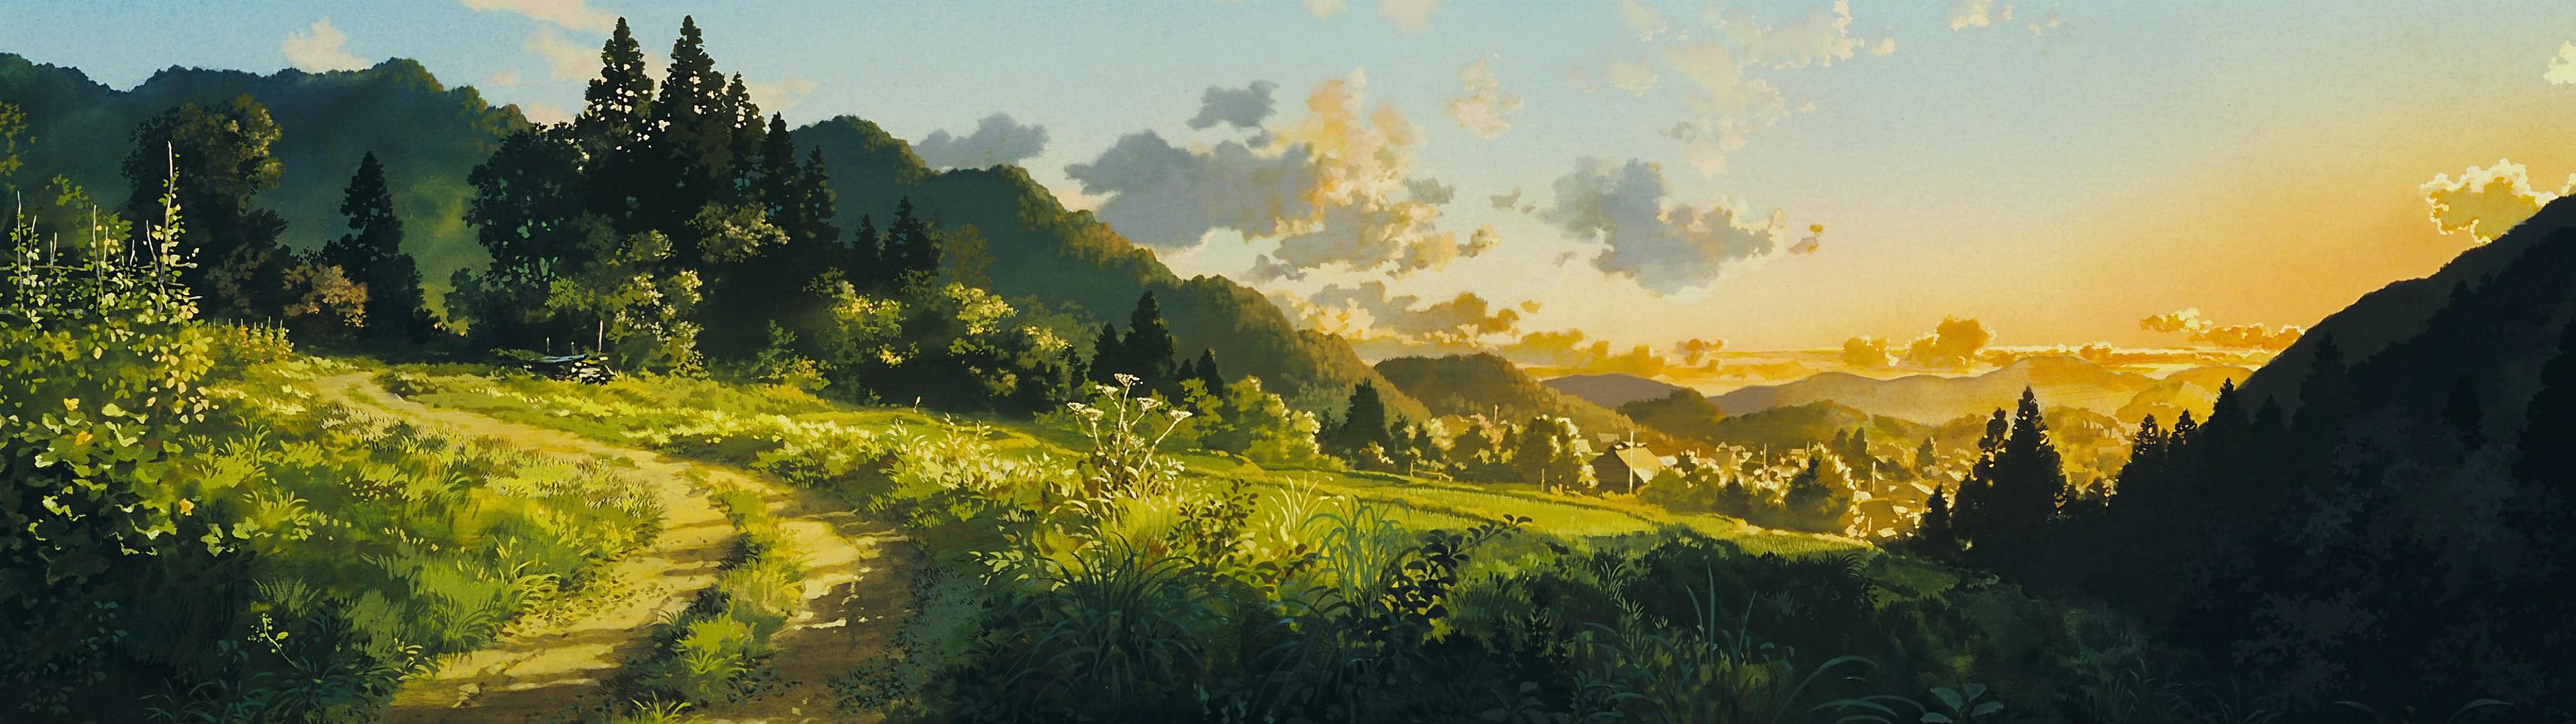 Studio Ghibli là một trong những studio phim hoạt hình nổi tiếng nhất thế giới với những tác phẩm gây cảm động và tuyệt vời. Đến với bộ sưu tập hình ảnh Ghibli của chúng tôi, bạn sẽ được thưởng thức những bức hình đẹp mắt và đầy nghệ thuật về các nhân vật và cảnh quan trong các bộ phim cổ điển của hãng. Hãy tìm nguồn cảm hứng mới cho công việc và cuộc sống của bạn với hình ảnh Ghibli đặc trưng này.